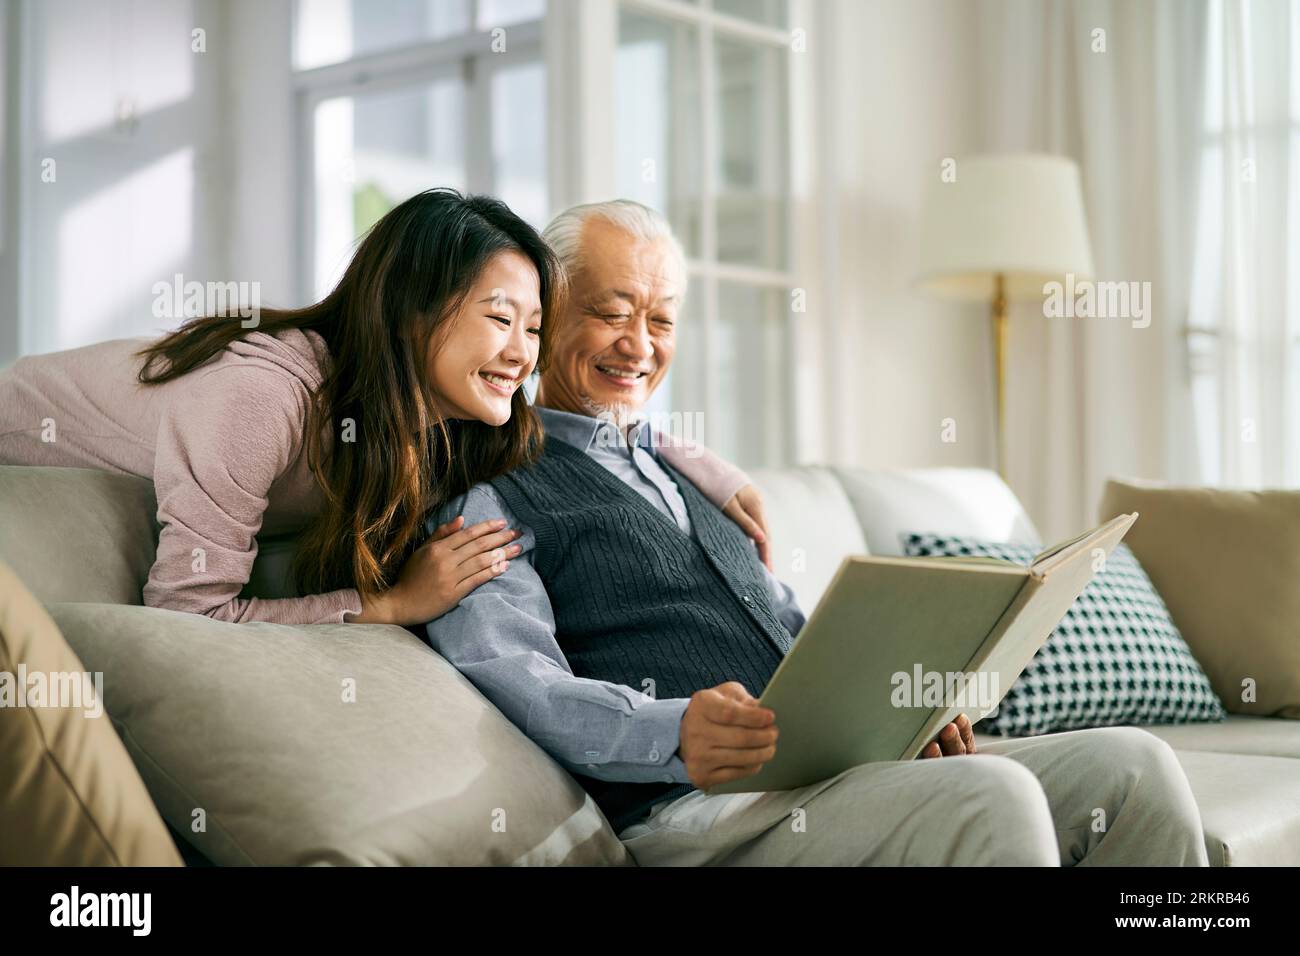 fille adulte asiatique et père aîné appréciant la conversation et le bon temps à la maison Banque D'Images